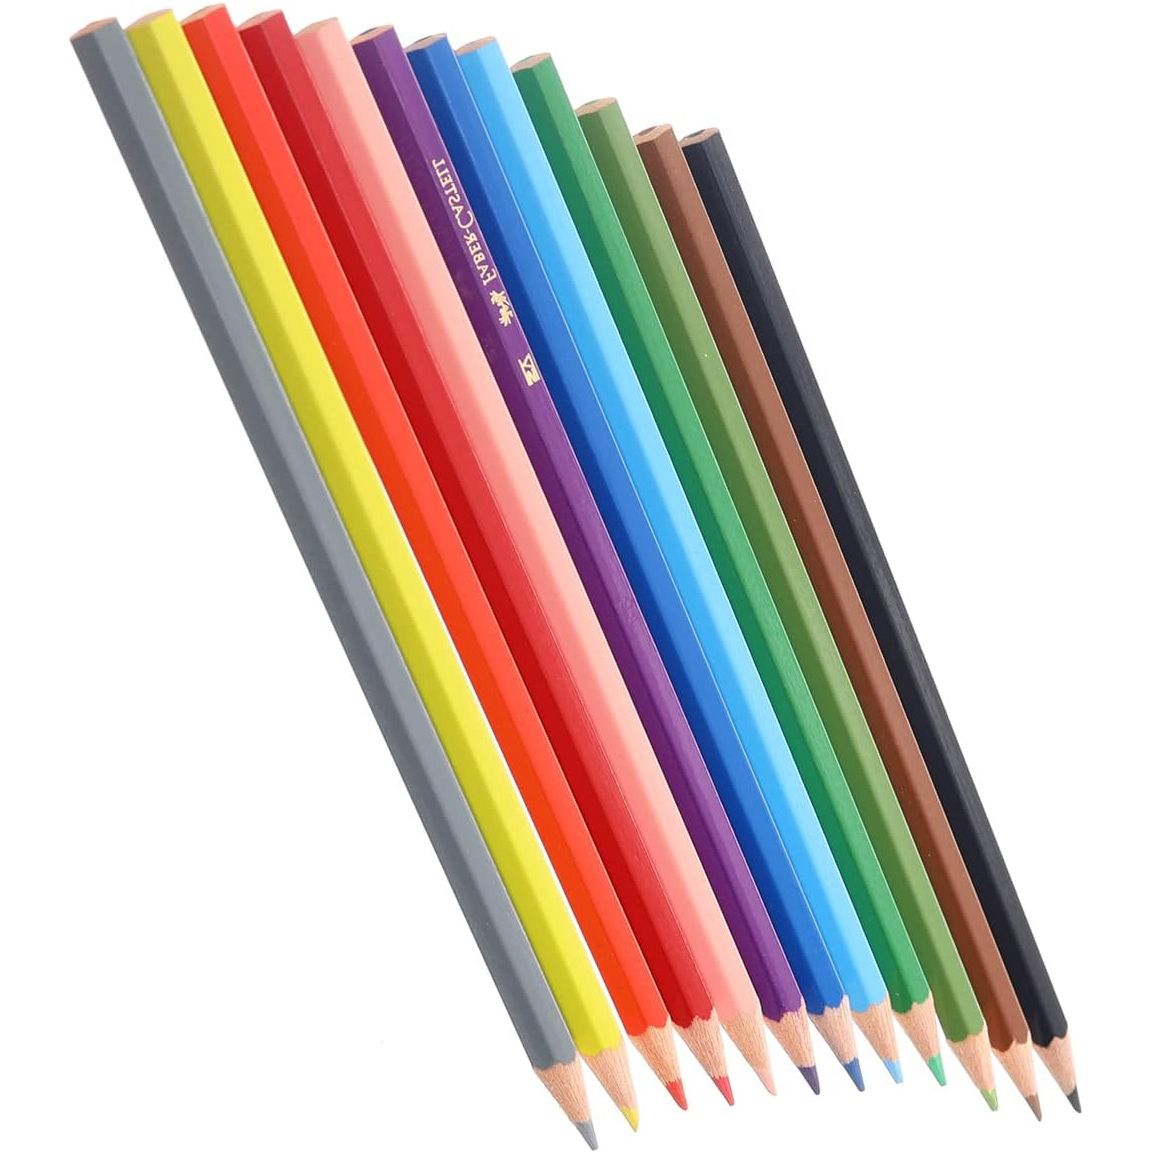 أقلام تلوين خشبية طويلة من فابر كاستل 12 قلم تلوين - متعددة الألوان